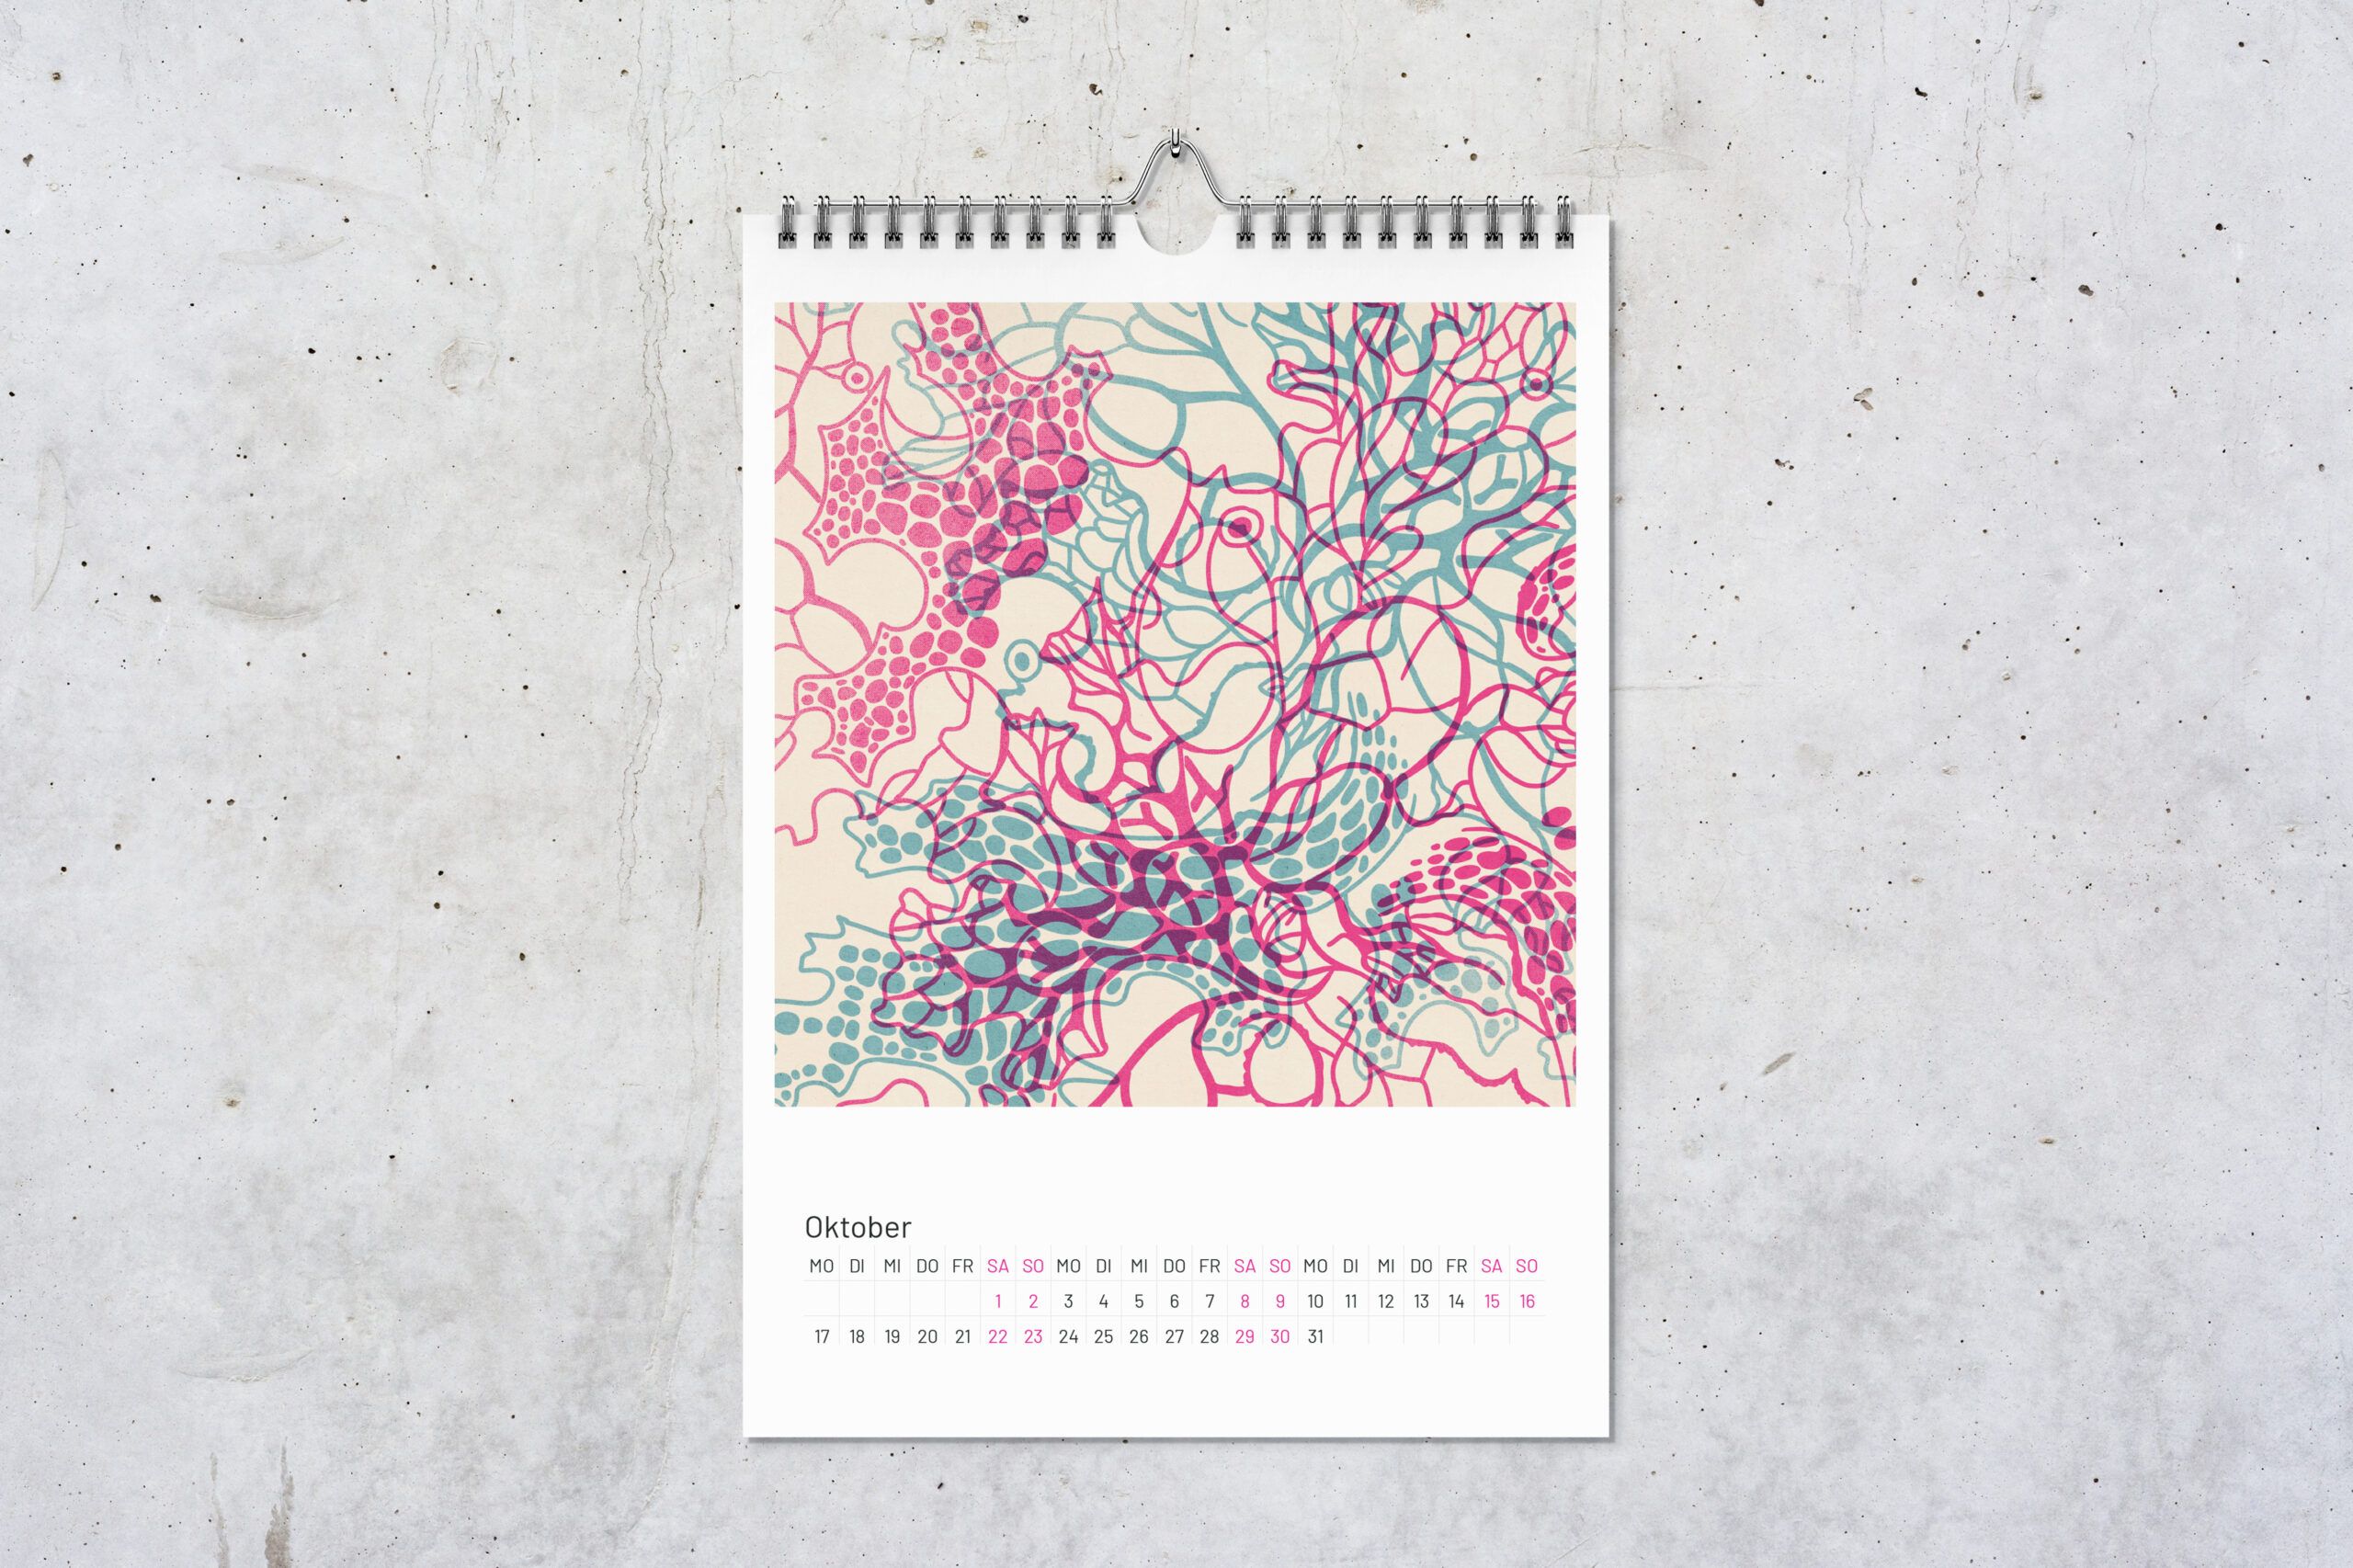 Kalenderblatt Flechten für Oktober mit zwei digitalen Zeichnungen im Risografie Stil. Die Zeichnungen in pink und blau überlagern sich.